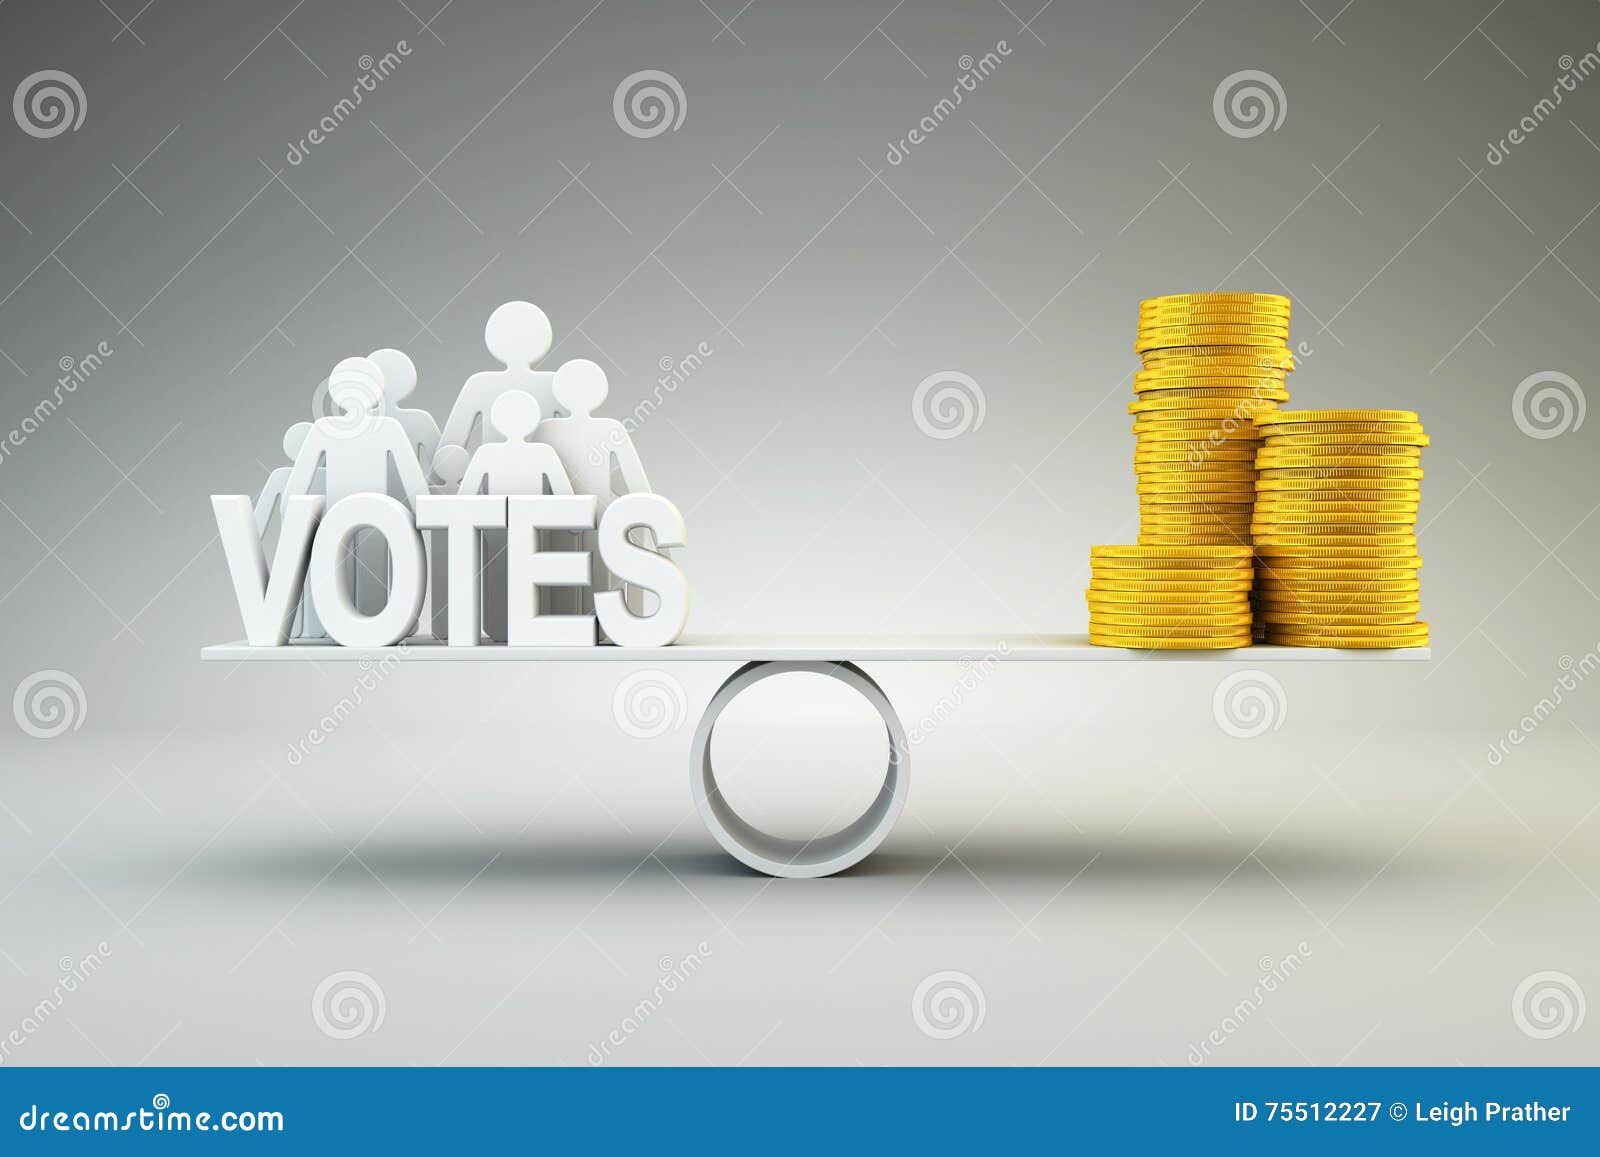 money buys votes